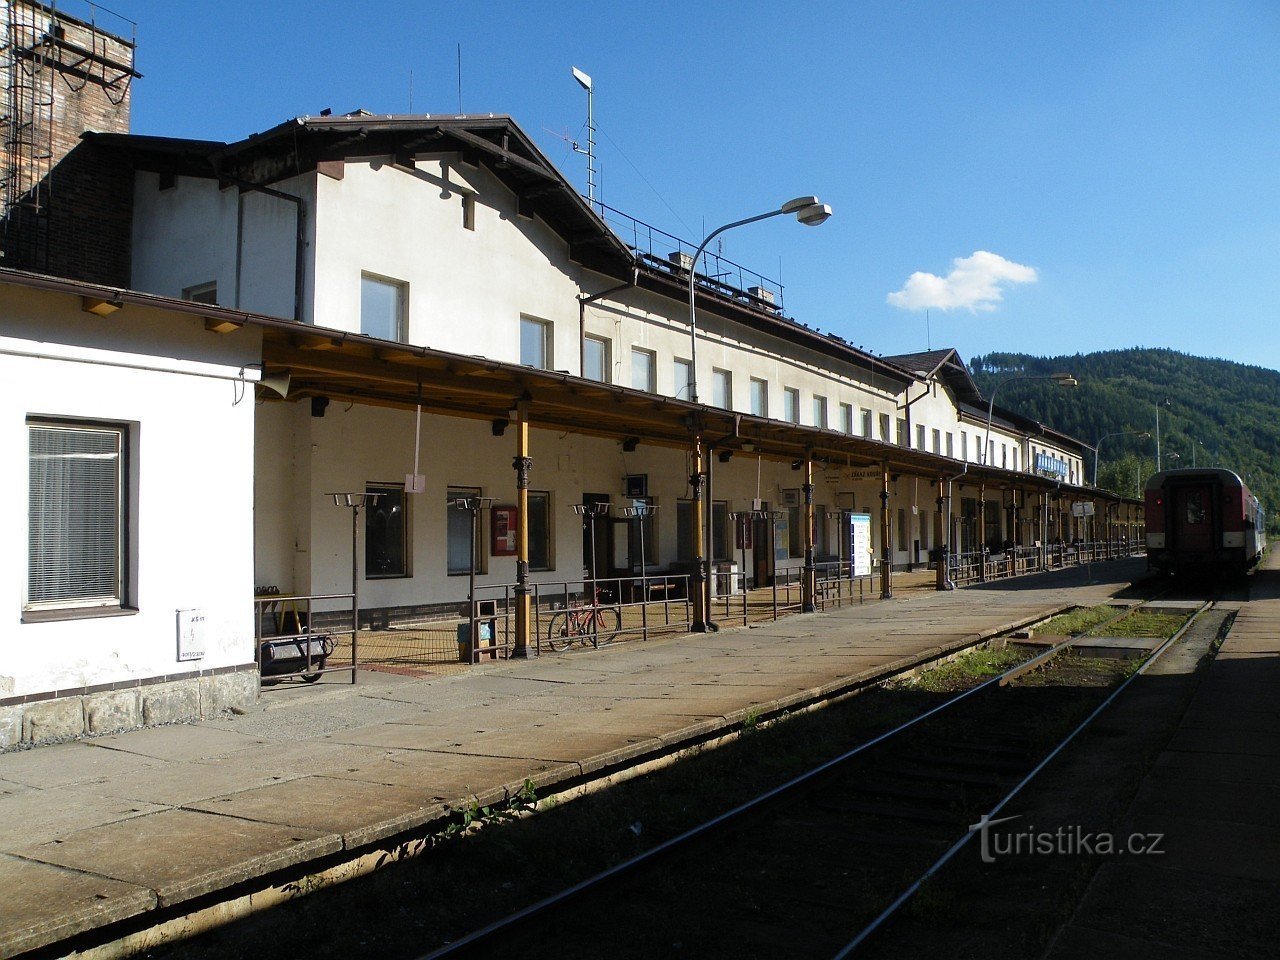 Железнодорожная станция Ганушовице